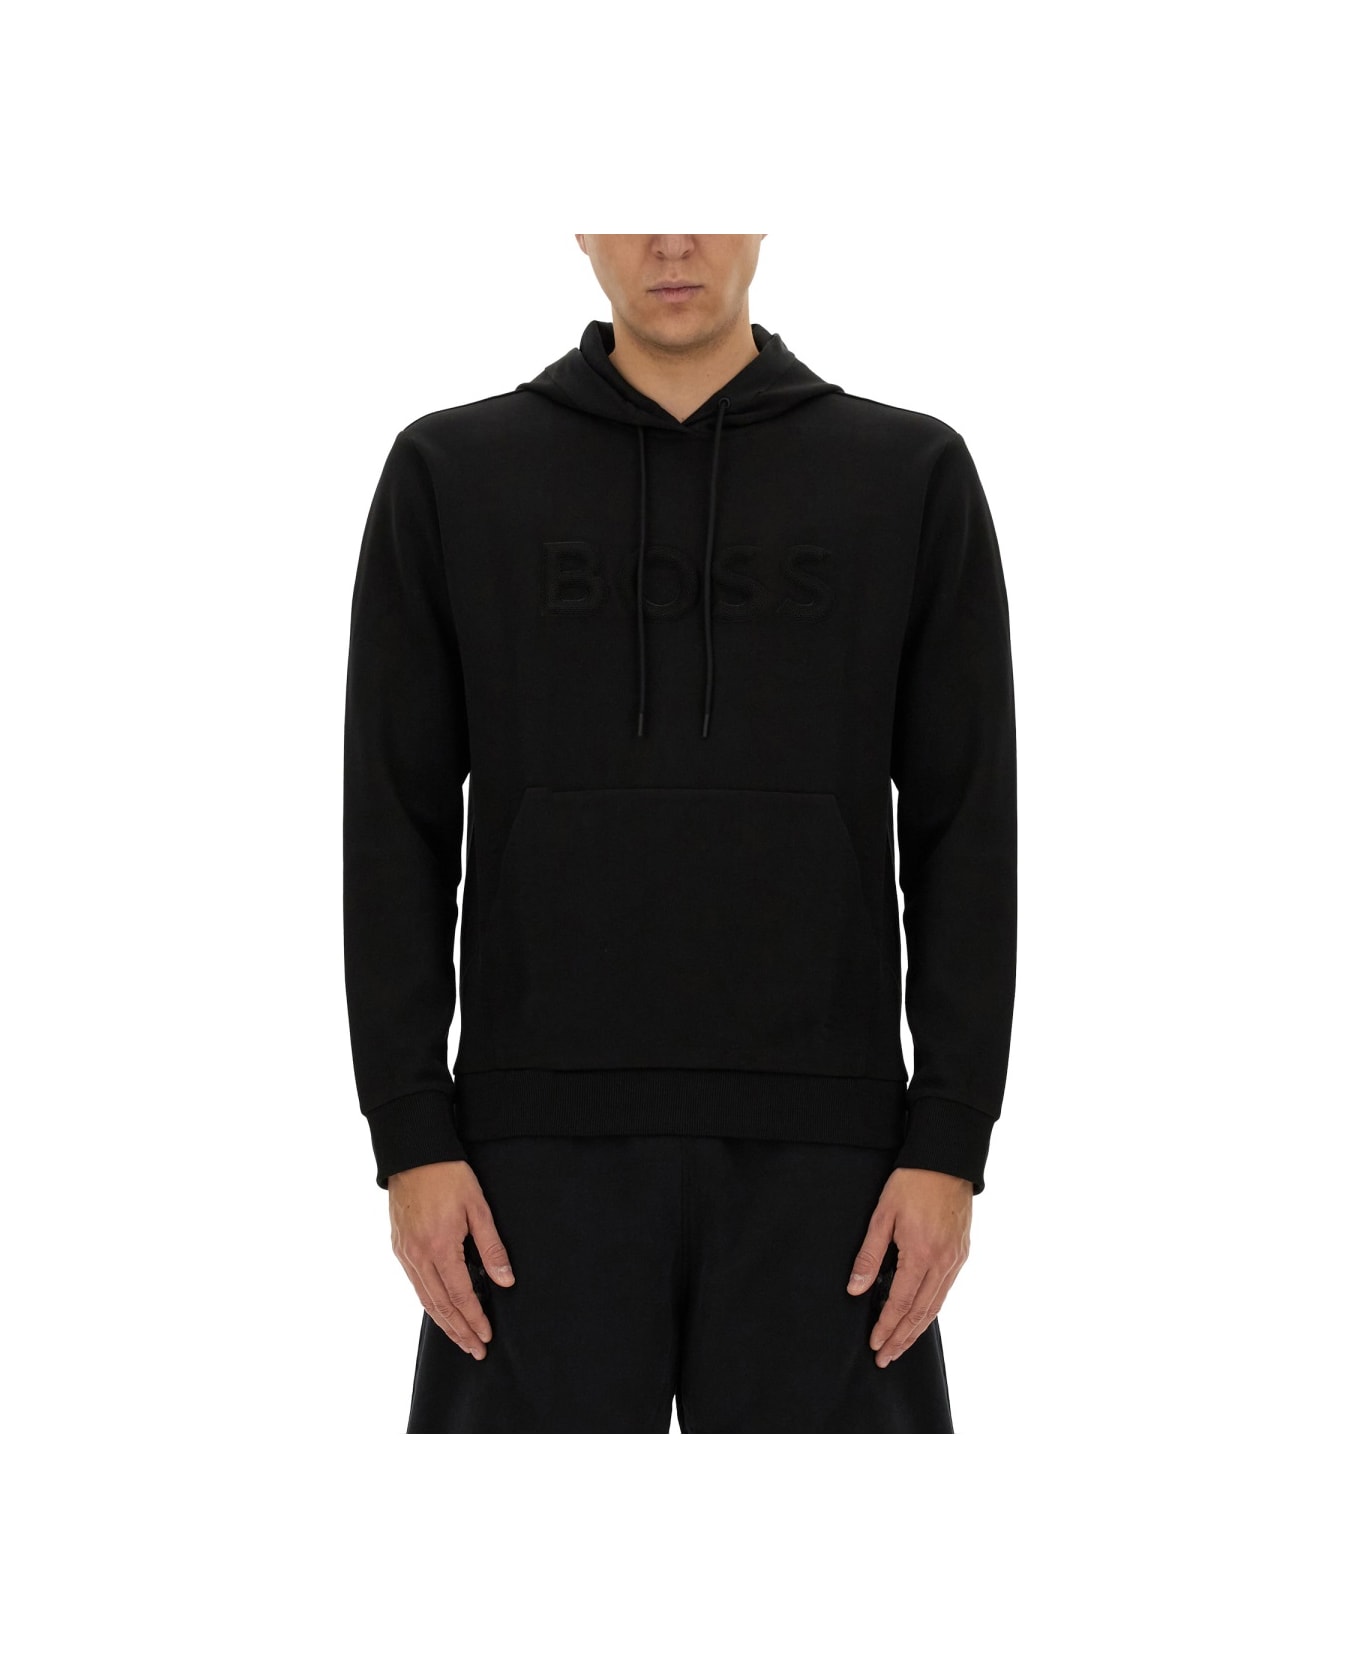 Hugo Boss Sweatshirt With Logo - BLACK